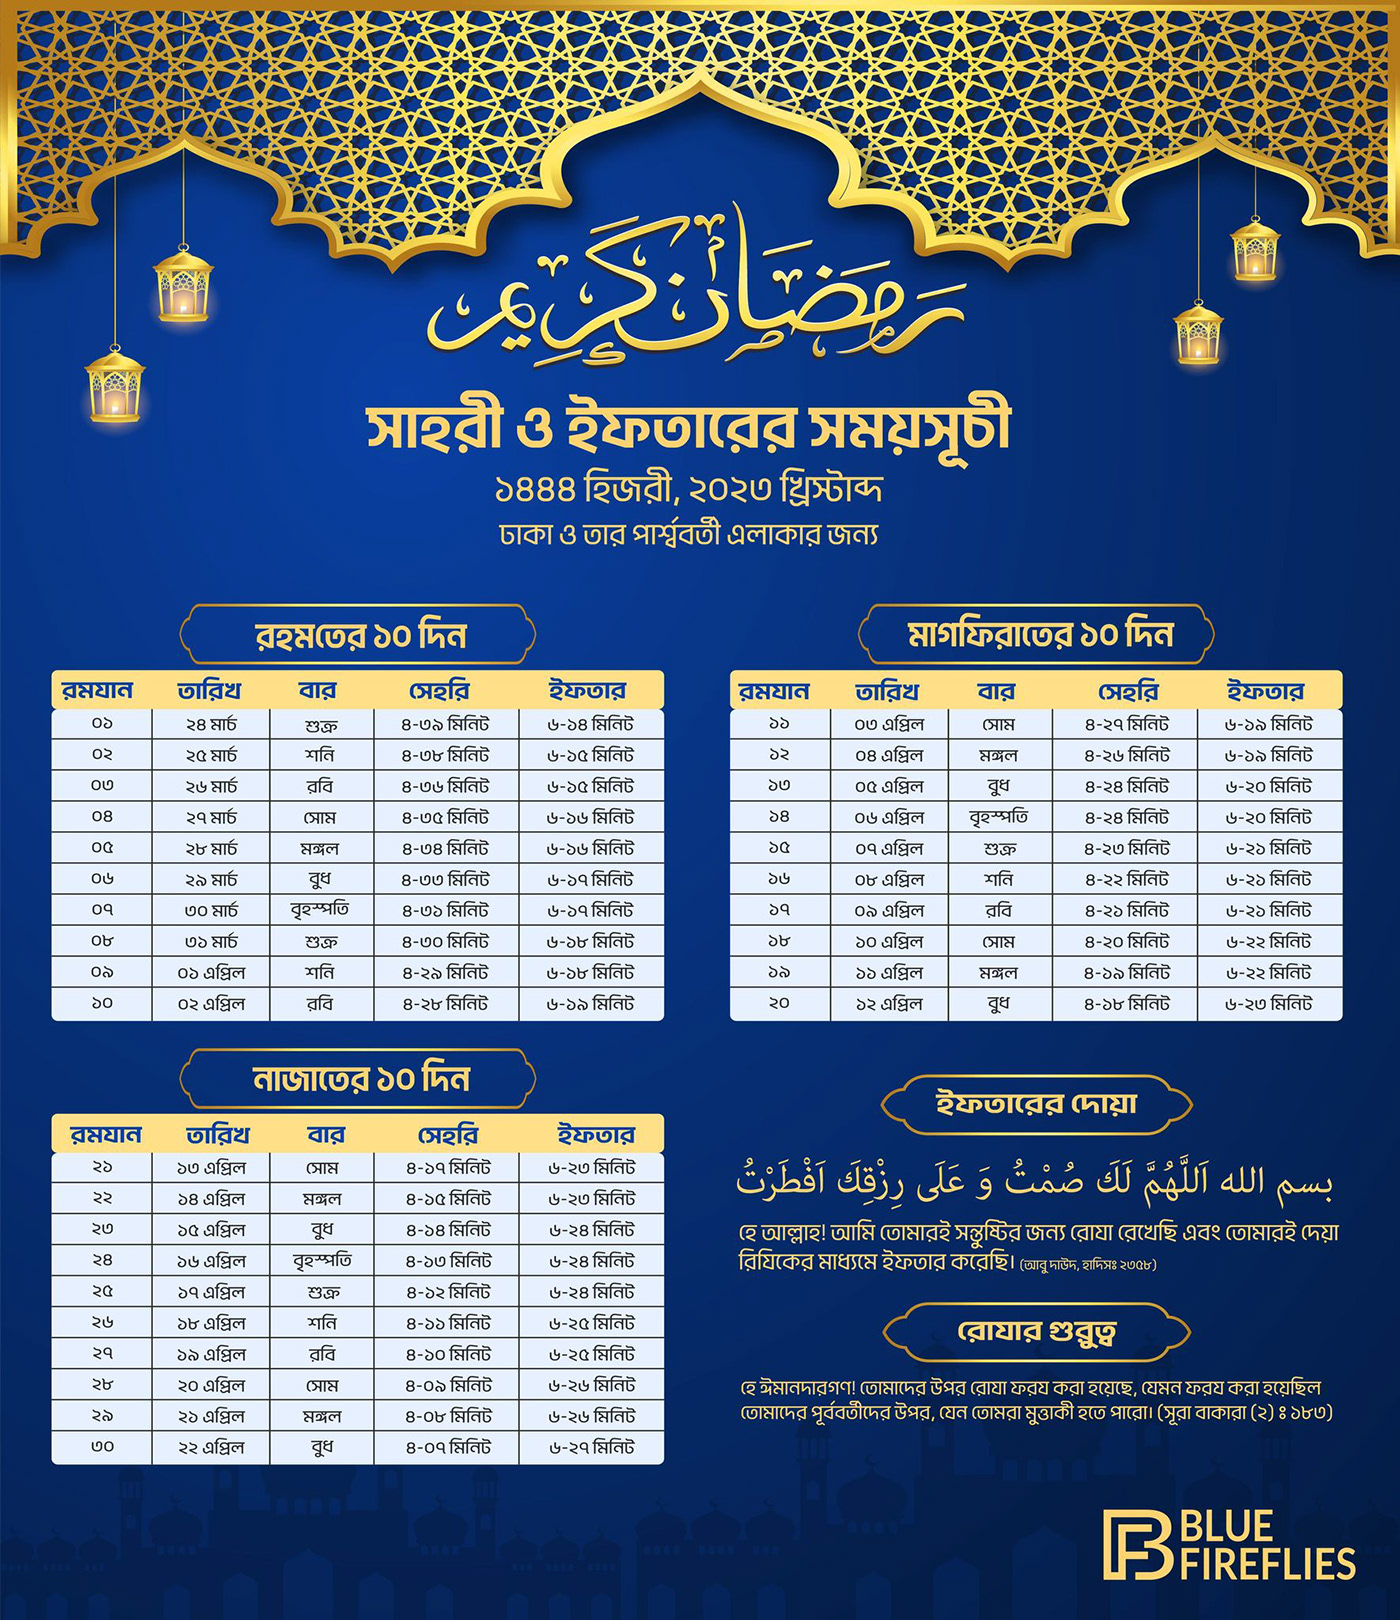 ramadan islamic ramadan kareem রমযানের ক্যালেন্ডার Ramadan Calendar সাহরী ও ইফতারের সময়সূচী মাহে রমজান ক্যালেন্ডার রমজানের ক্যালেন্ডার RAMJAN CALENDAR রমজানুল মোবারক